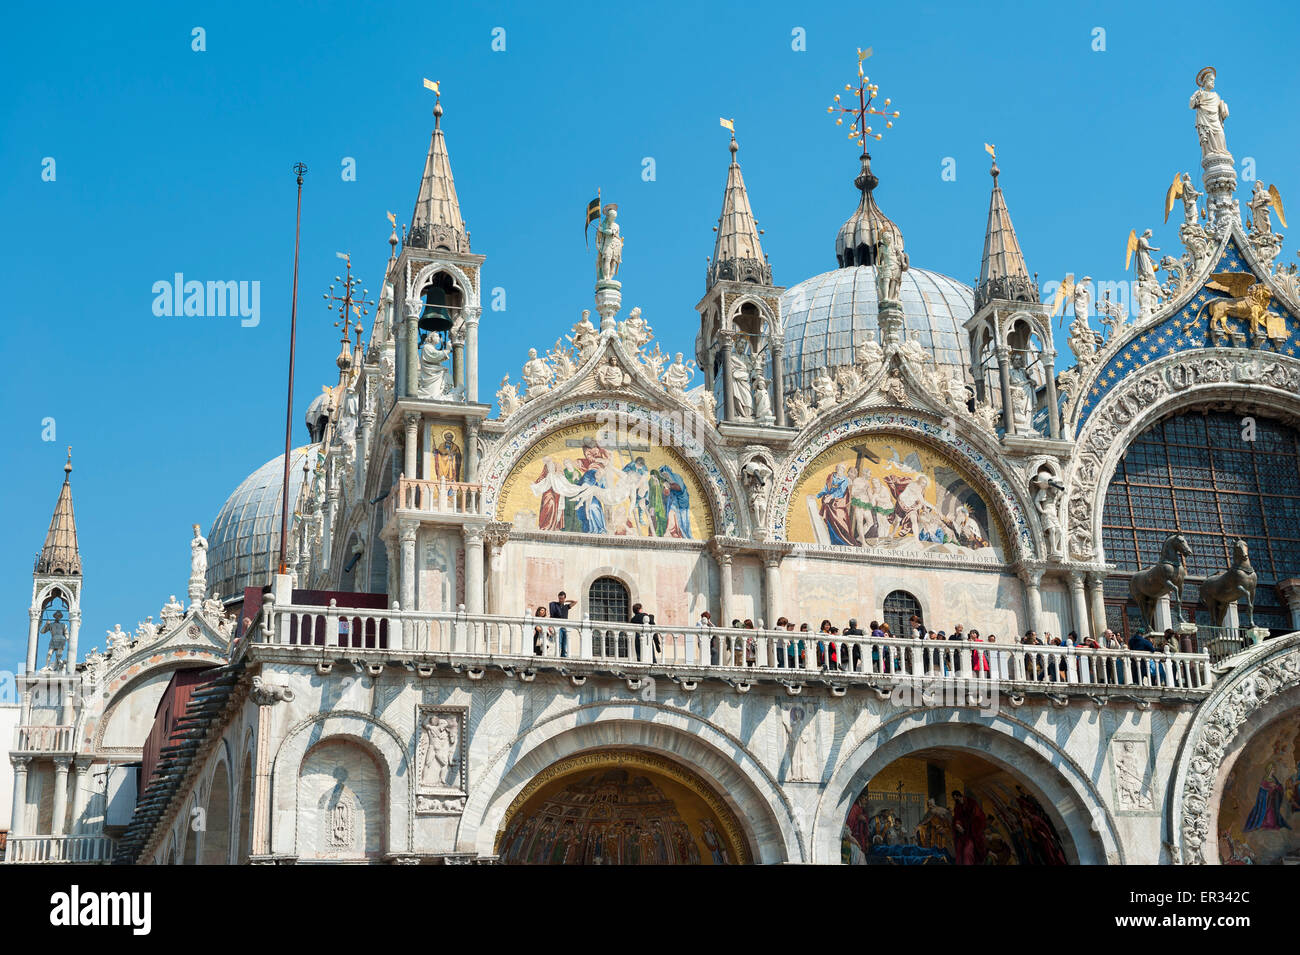 Venezia, Italia - 17 Aprile 2013: turisti esaminare la complessa architettura bizantina a la Basilica di San Marco. Foto Stock